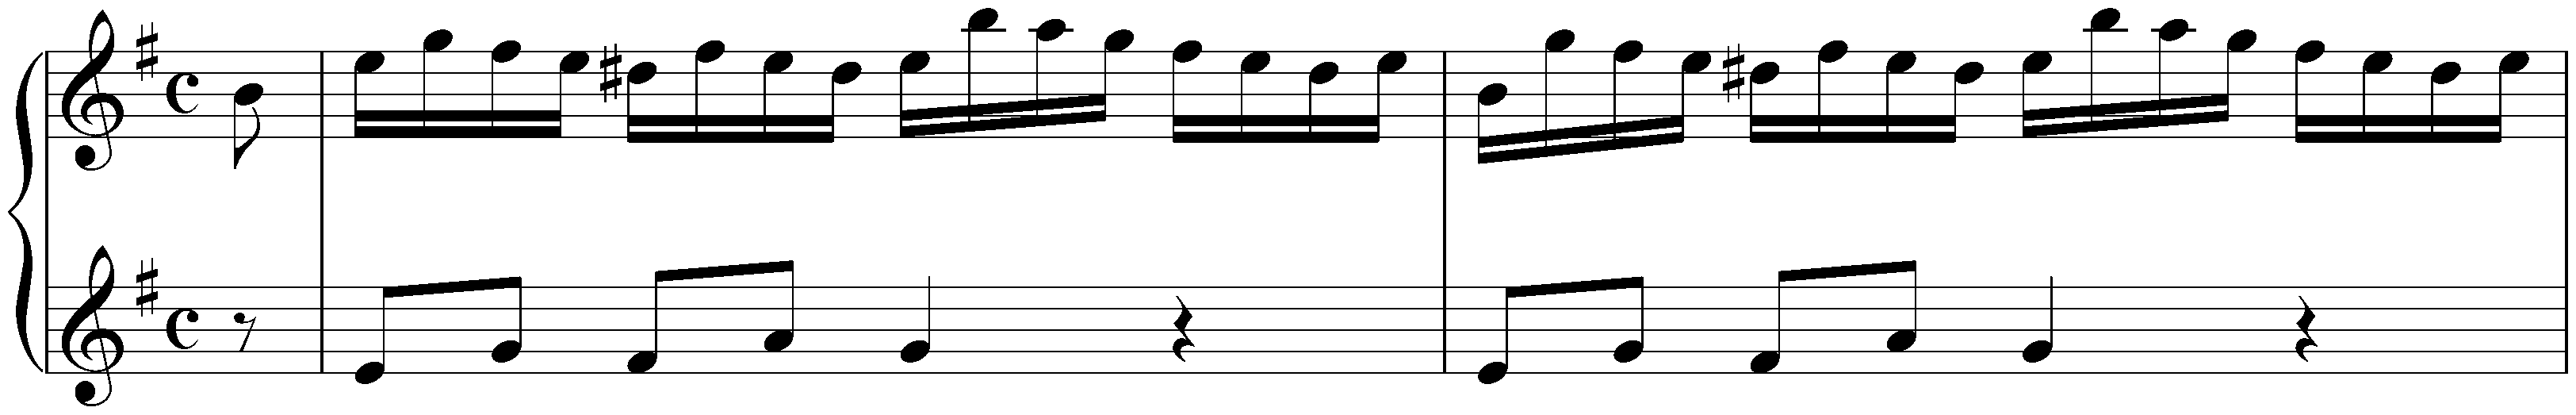 Incipits of lost works; 5. Sonata in E minor, Hob. XVI:2e, Landon 25